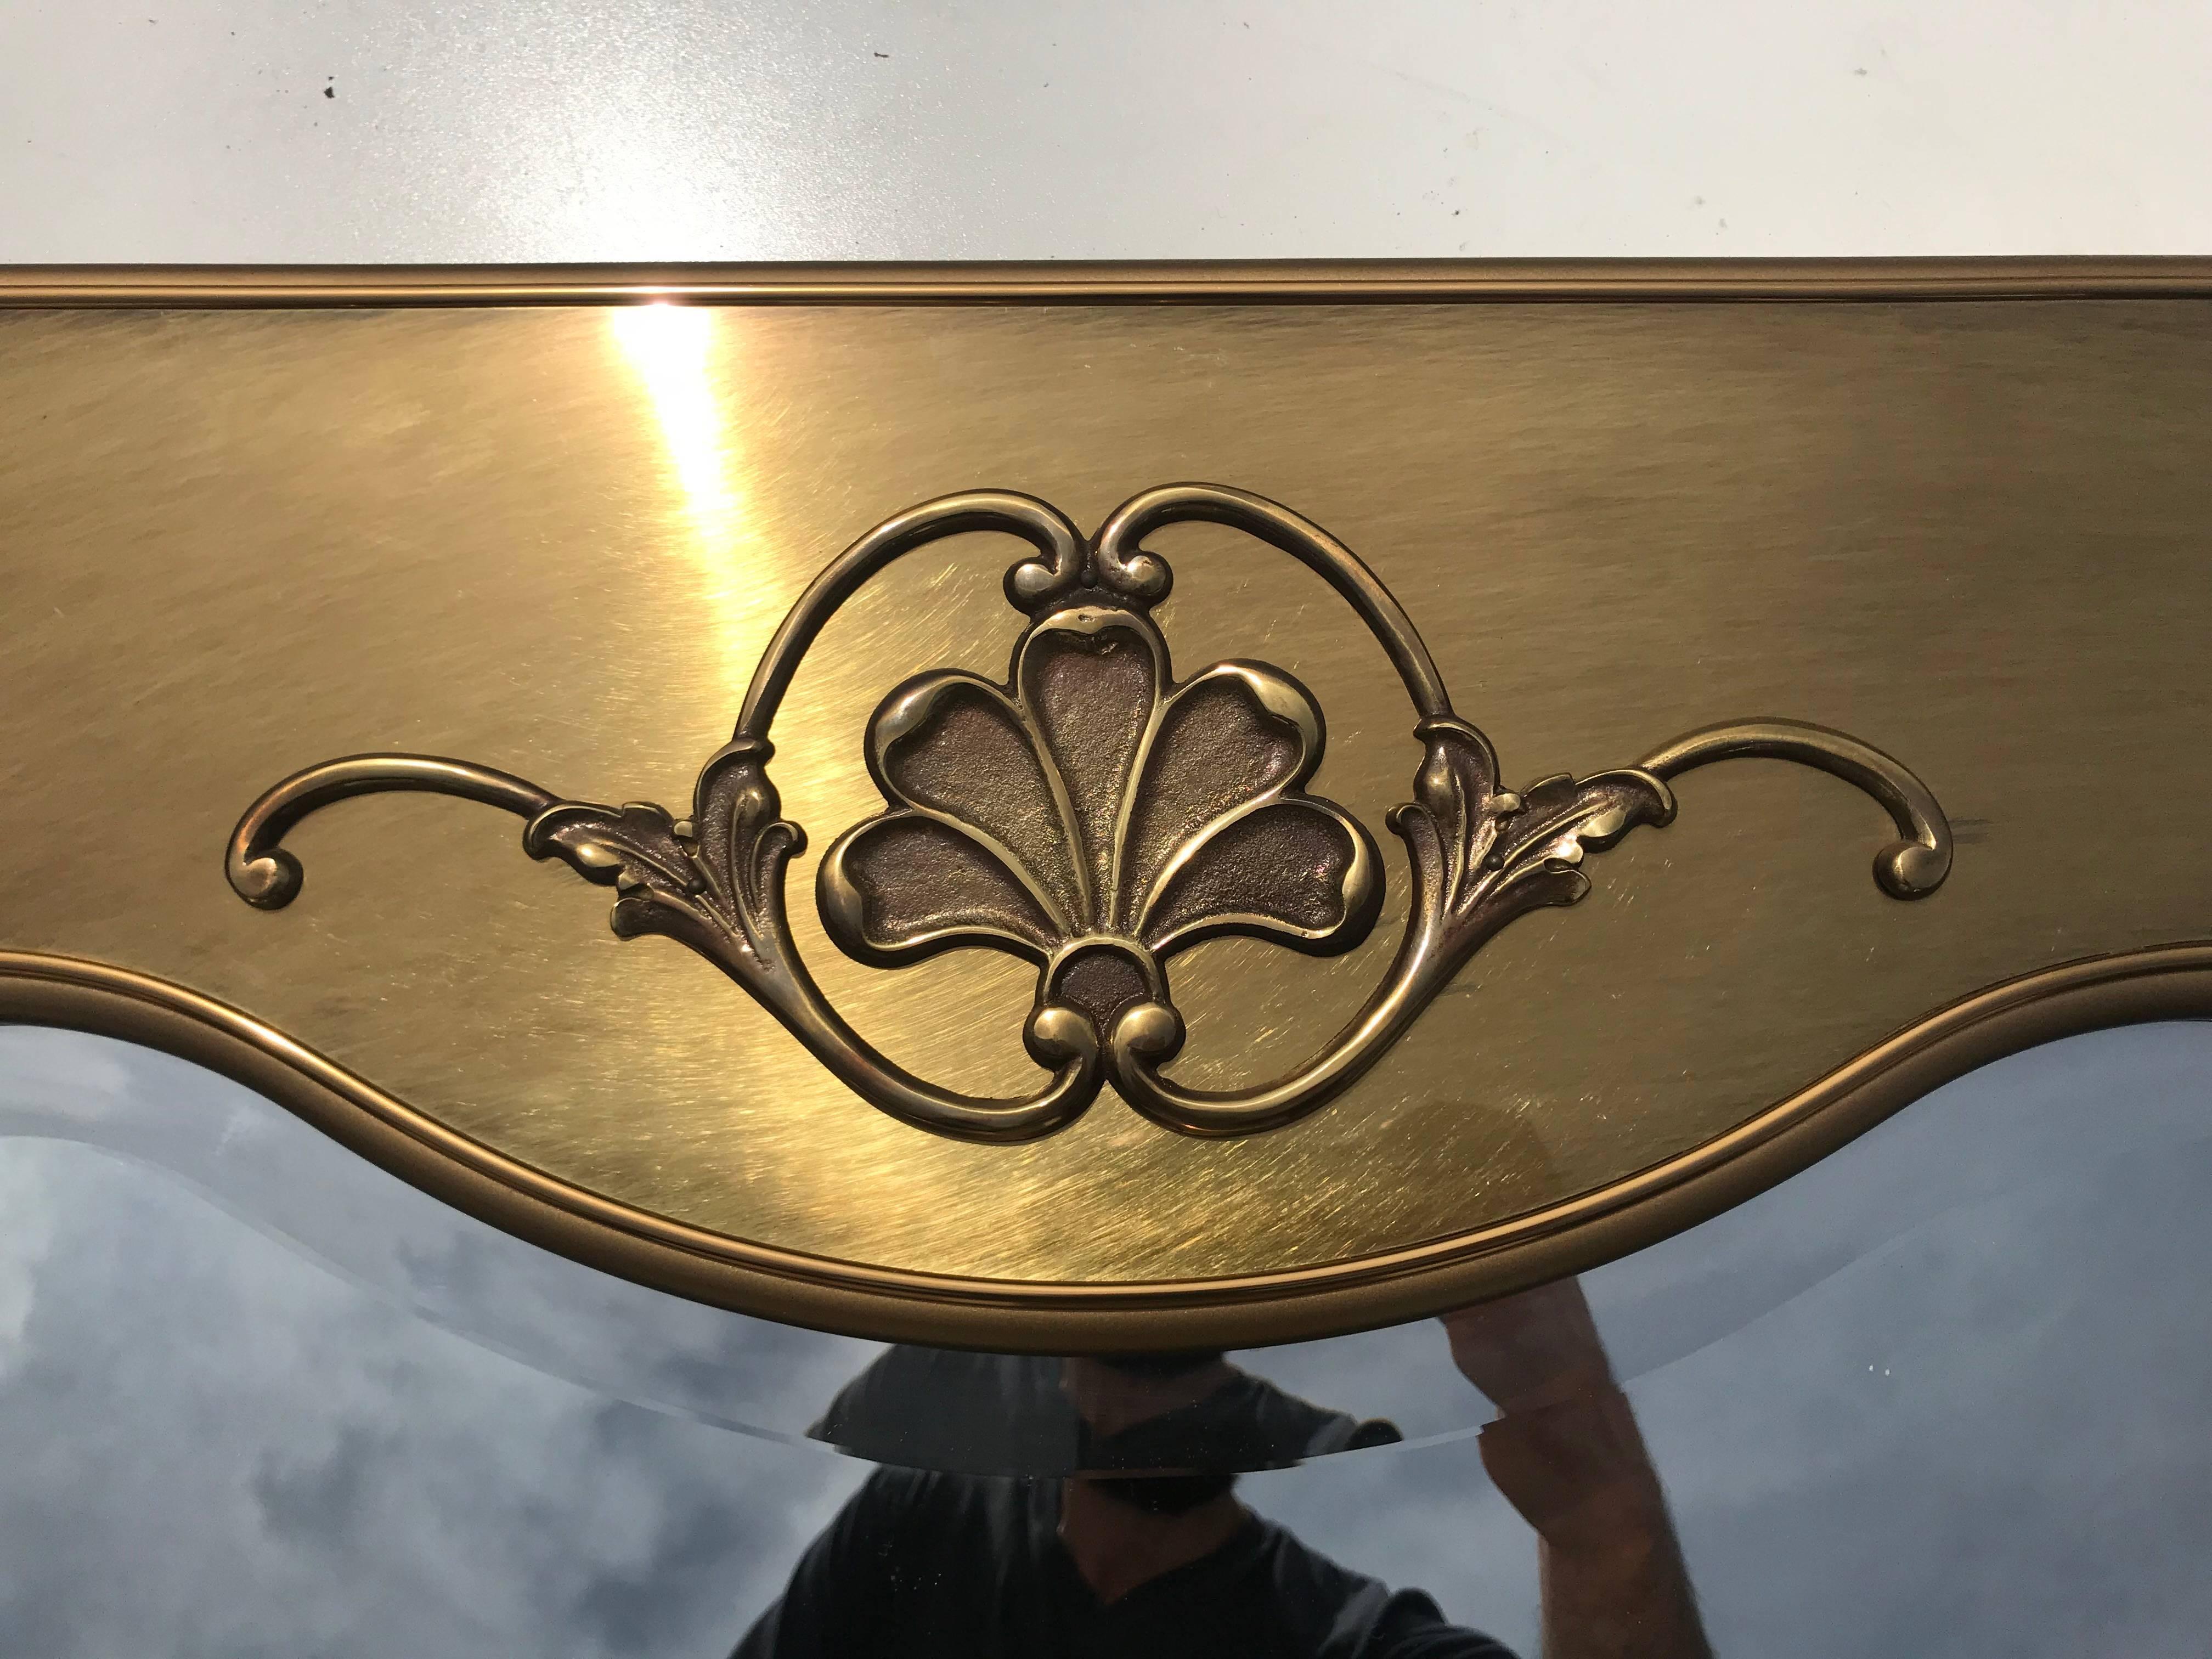 Mastercraft brass mirror.
Offered at Gallery Girasole